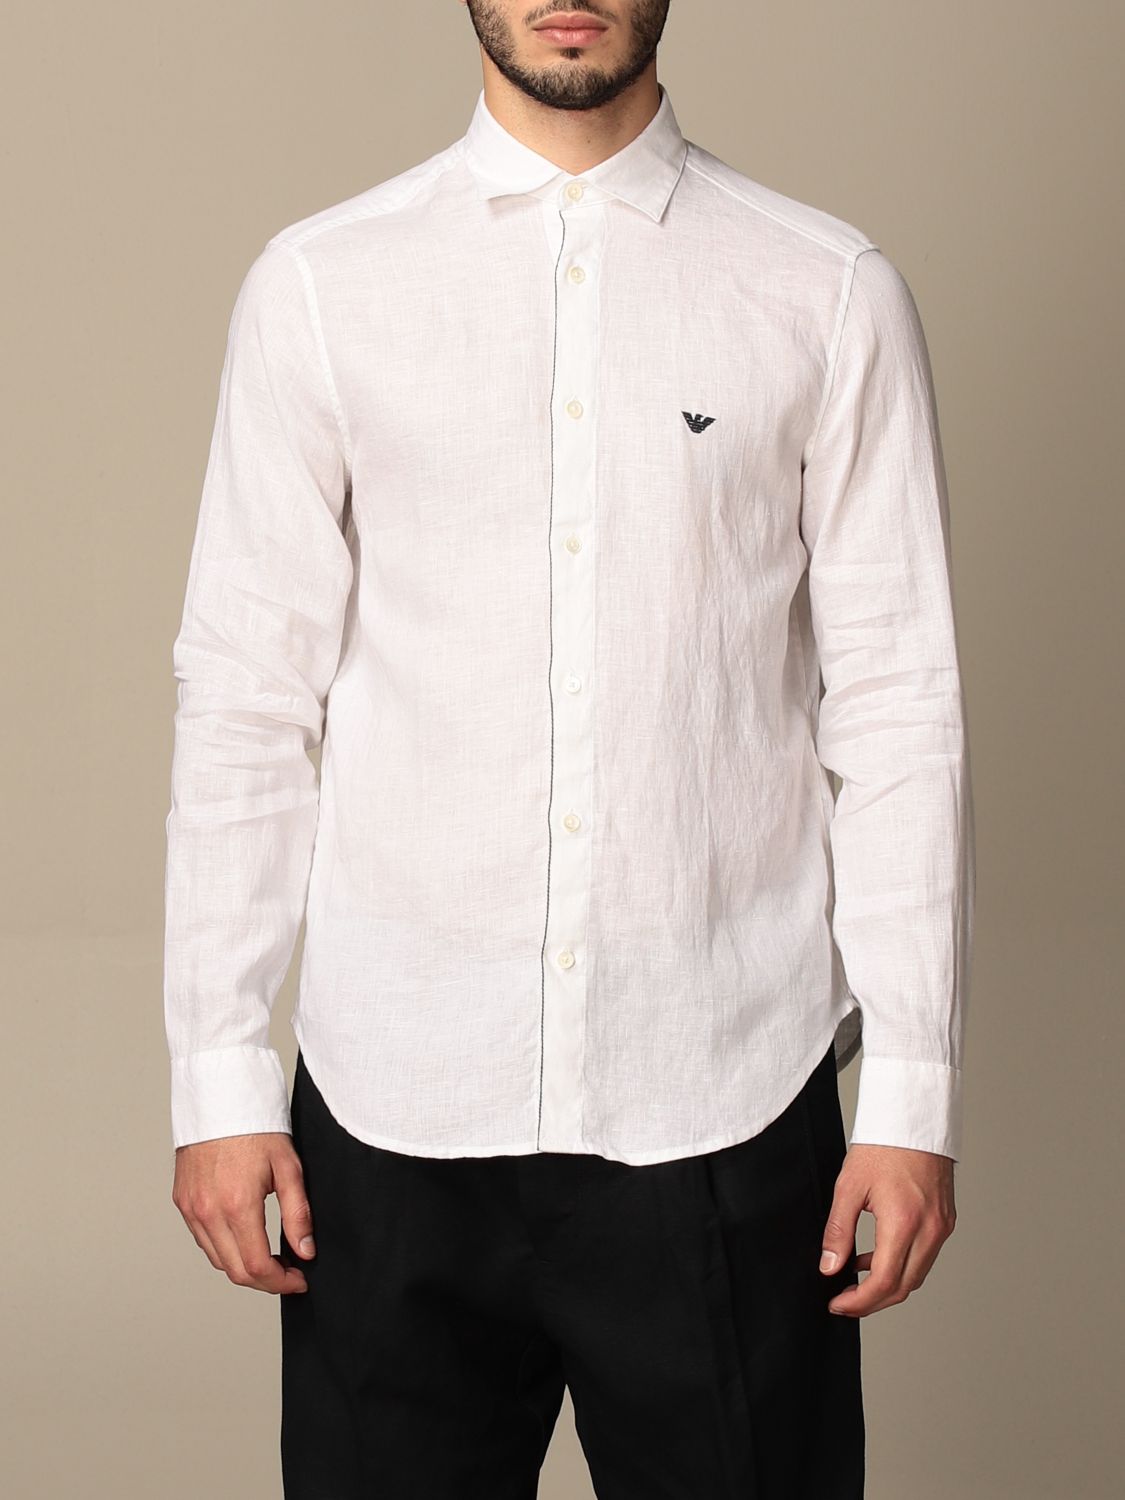 Emporio Armani Outlet: linen shirt | Shirt Emporio Armani Men White ...